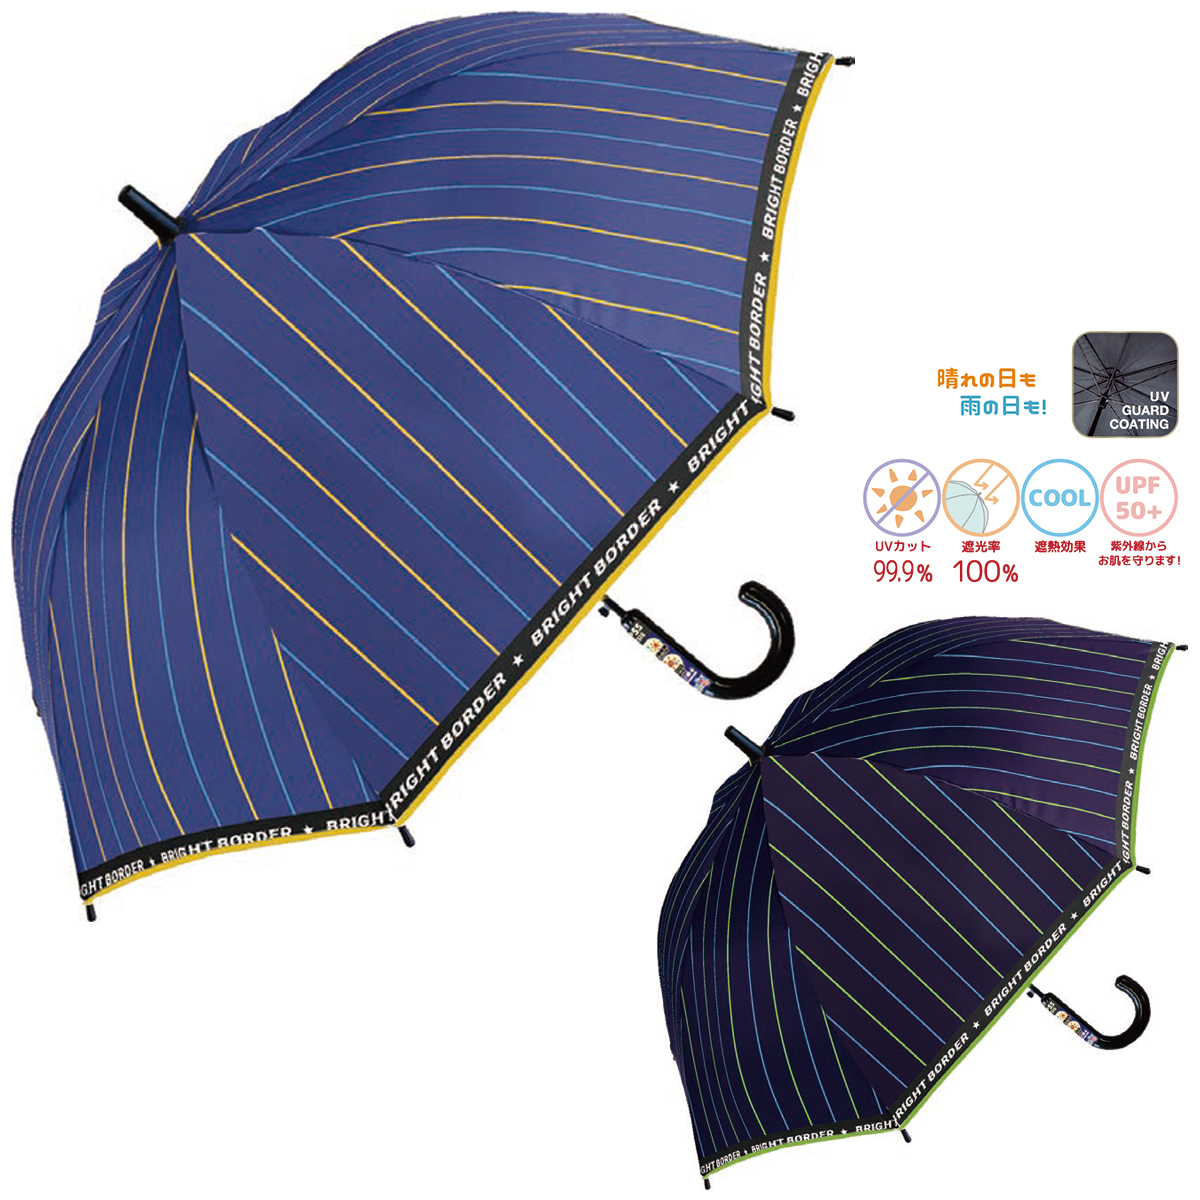 【中谷】ブライトボーダー UV 子ども用傘 ジャンプ傘